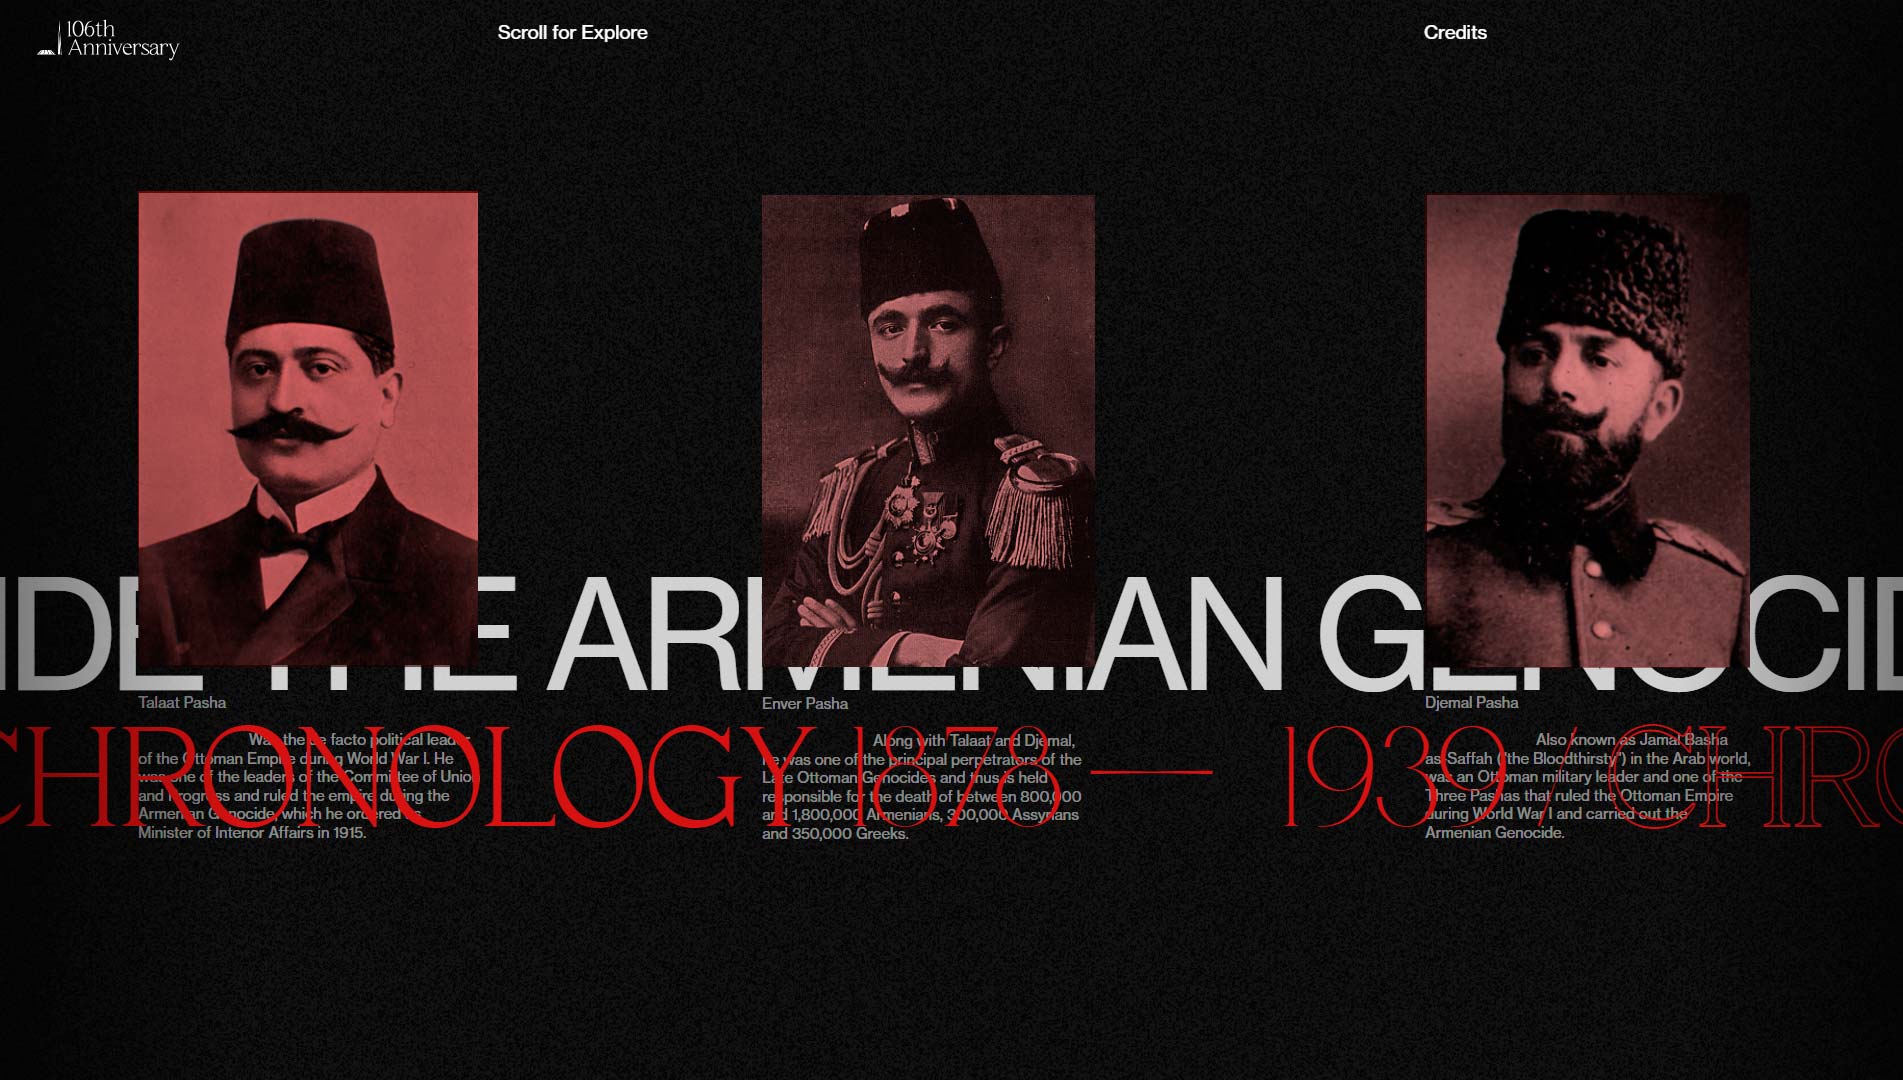 mejores-paginas-web-mes-armenian-genocide-02